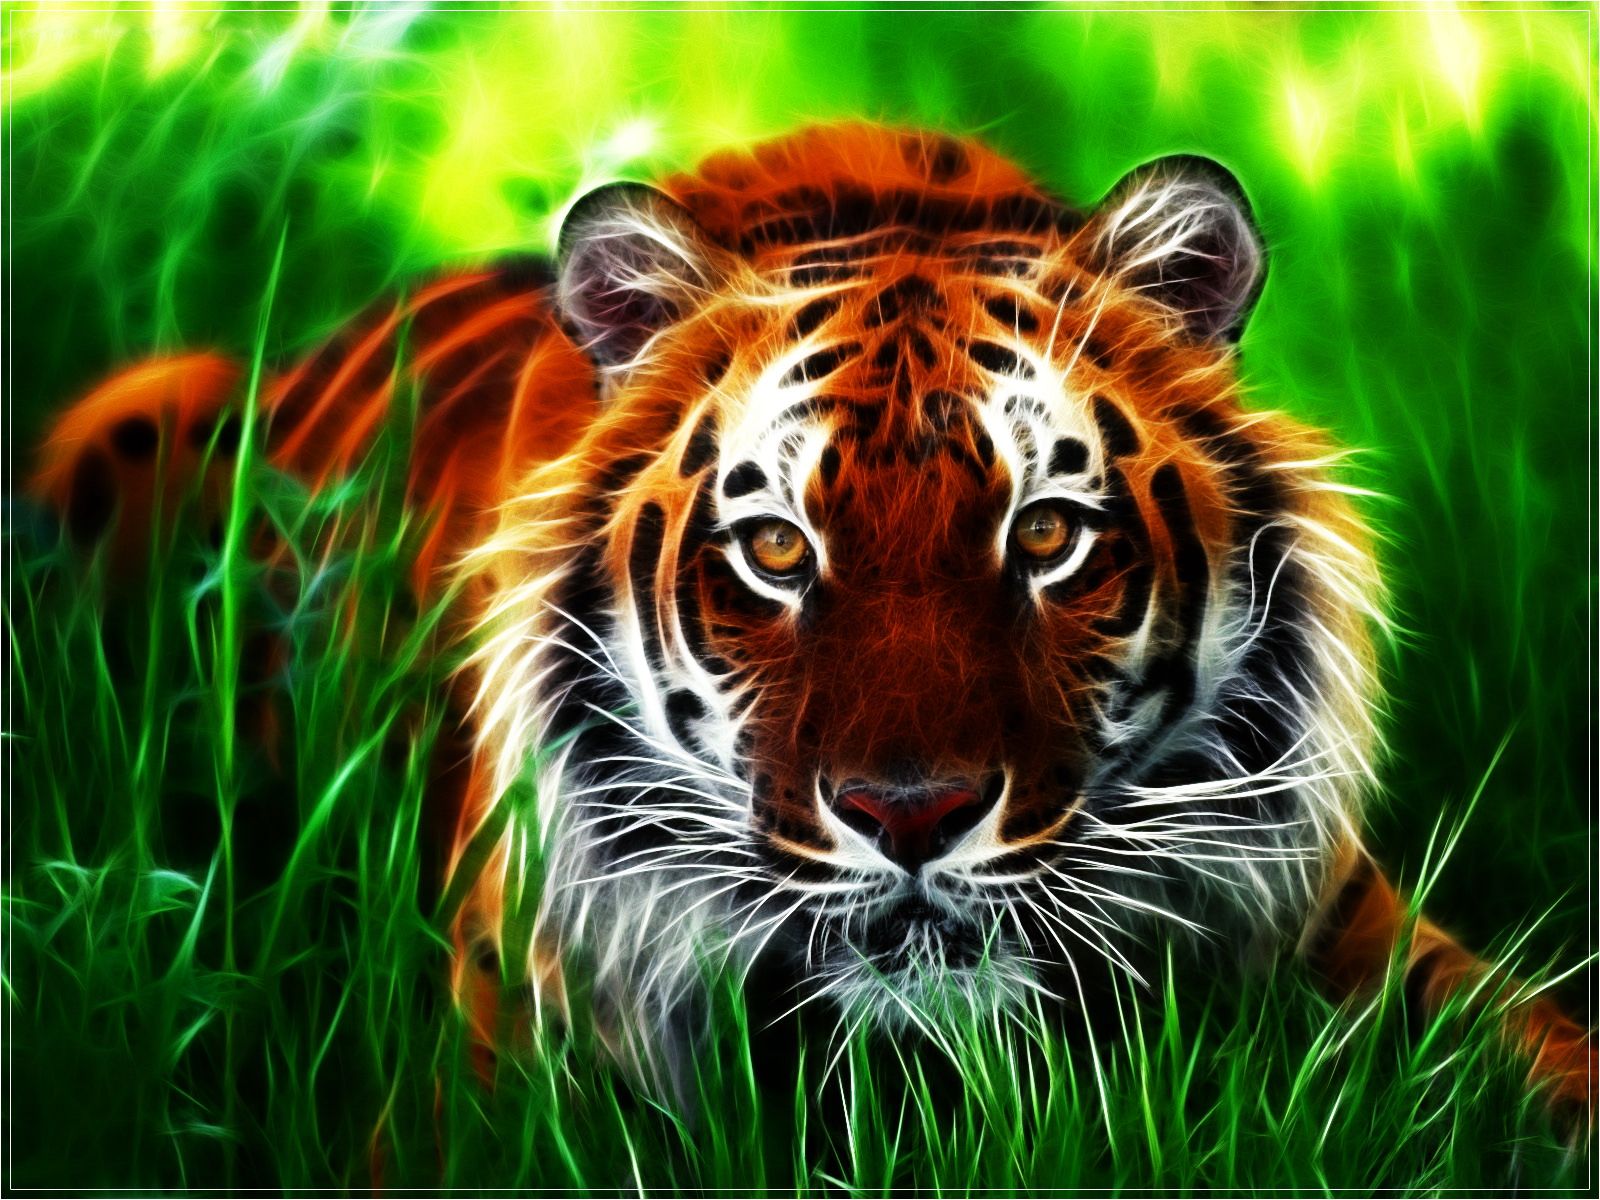  Die Schönsten Hintergrundbild 1600x1200. Fotos Tiger Große Katze ein Tier